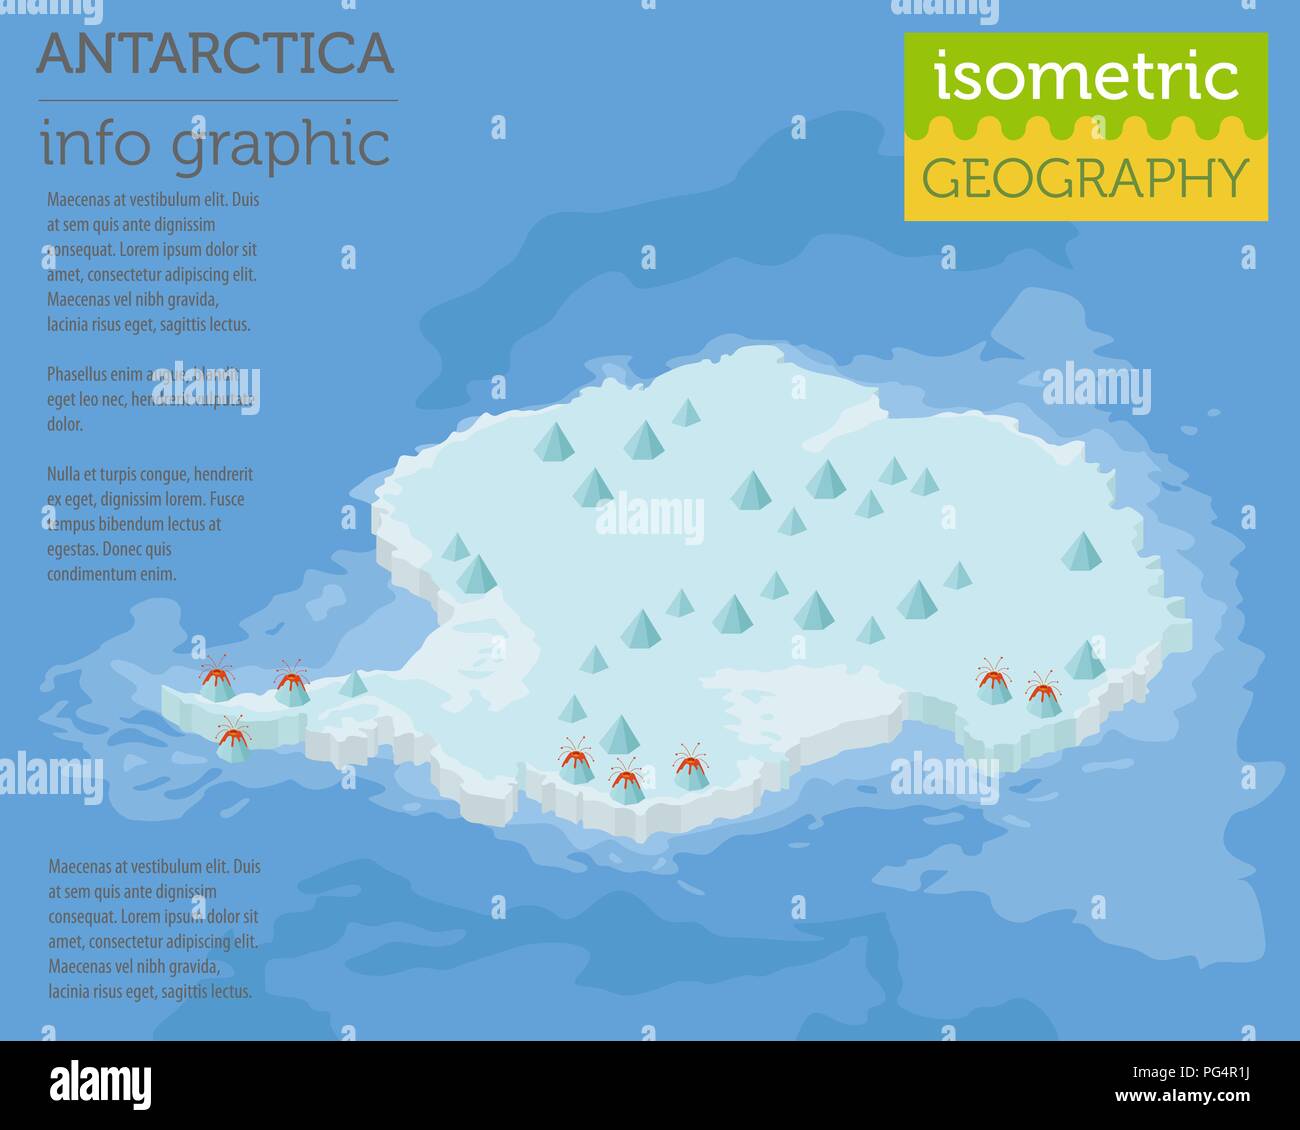 Isometrische 3d-Antarktis physische Karte Elemente. Ihre eigene Geographie info Graphische Sammlung aufzubauen. Vector Illustration Stock Vektor